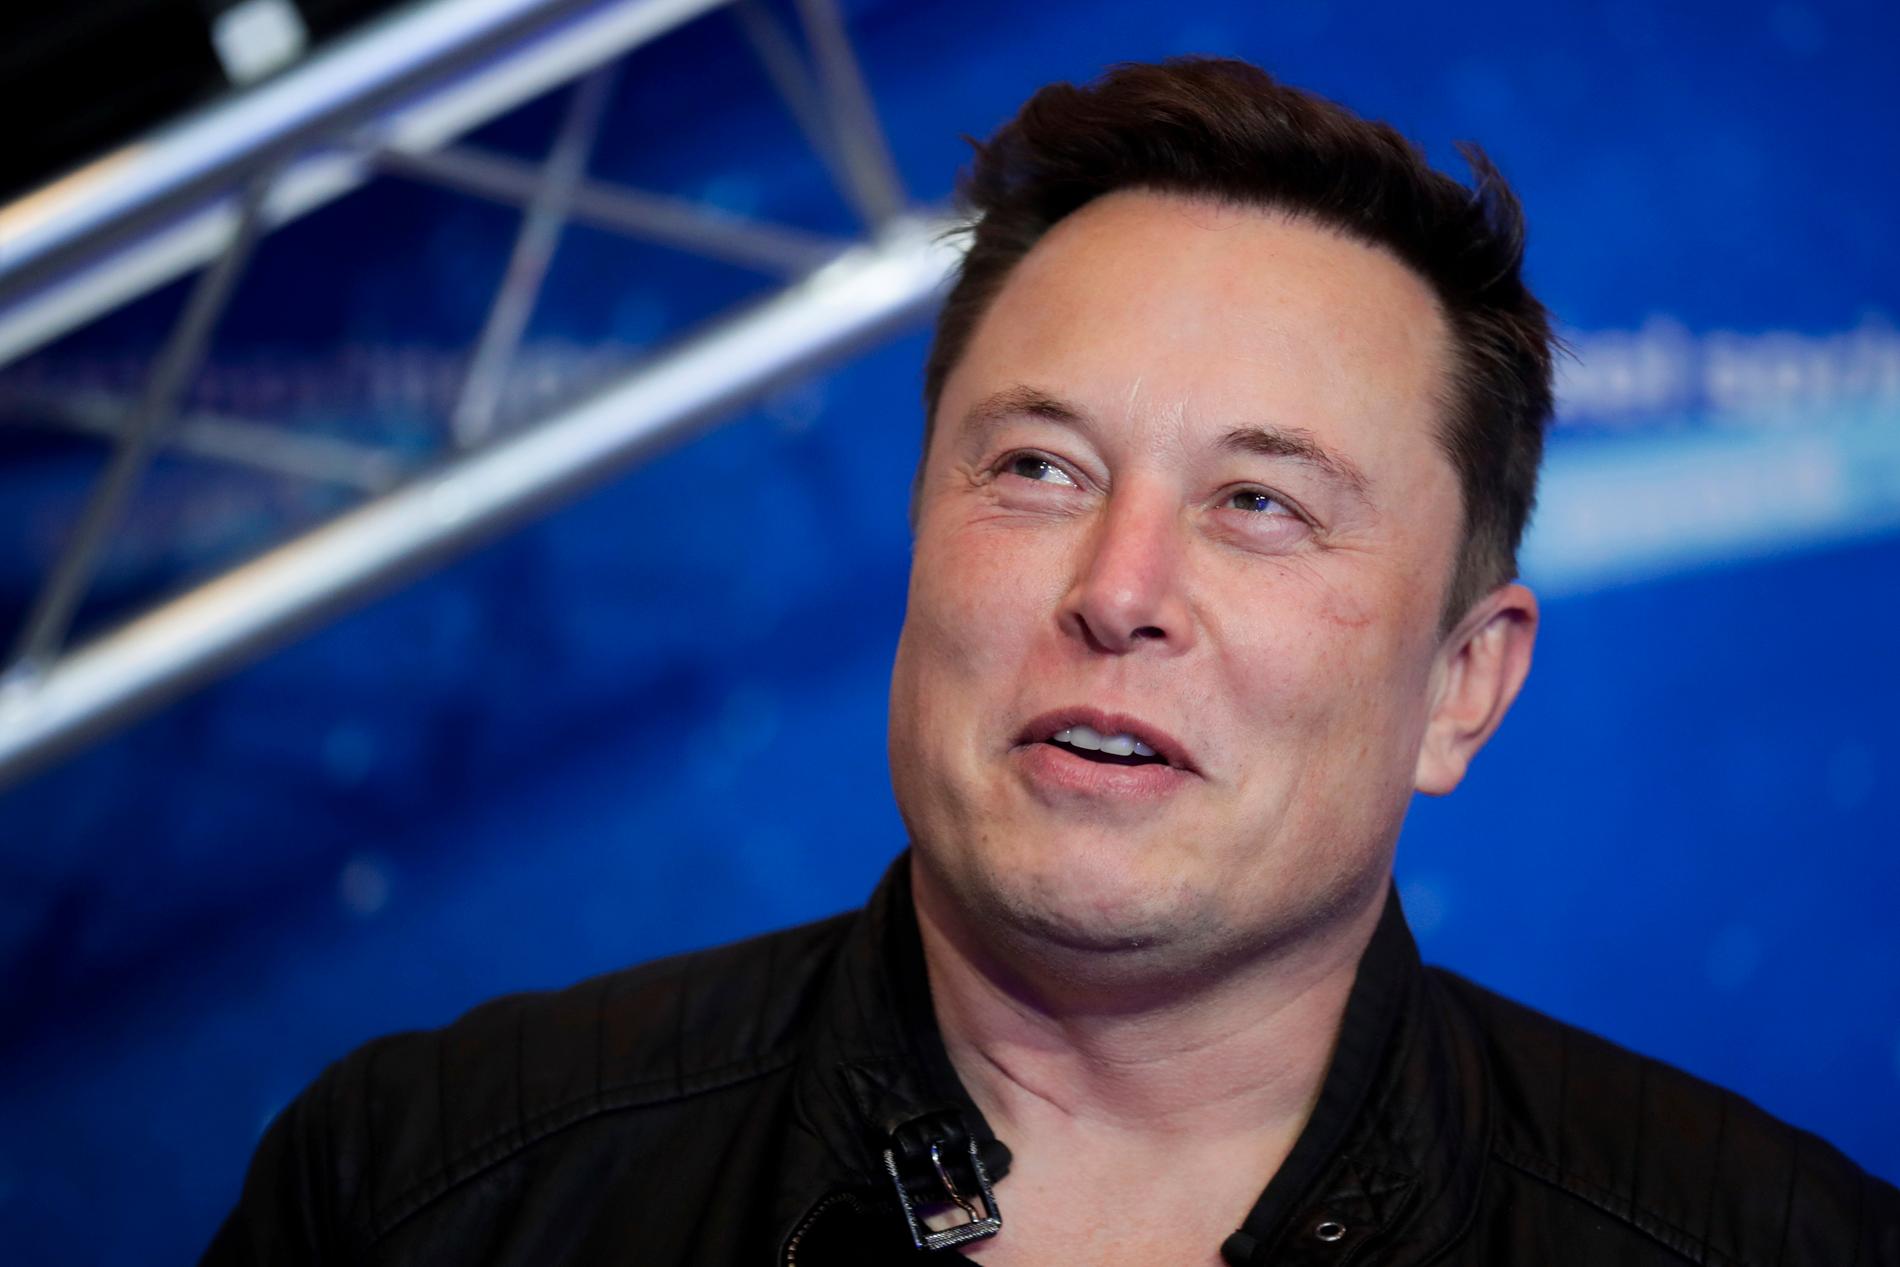 Elon Musk ska stå värd för sketchprogrammet "Saturday night live".